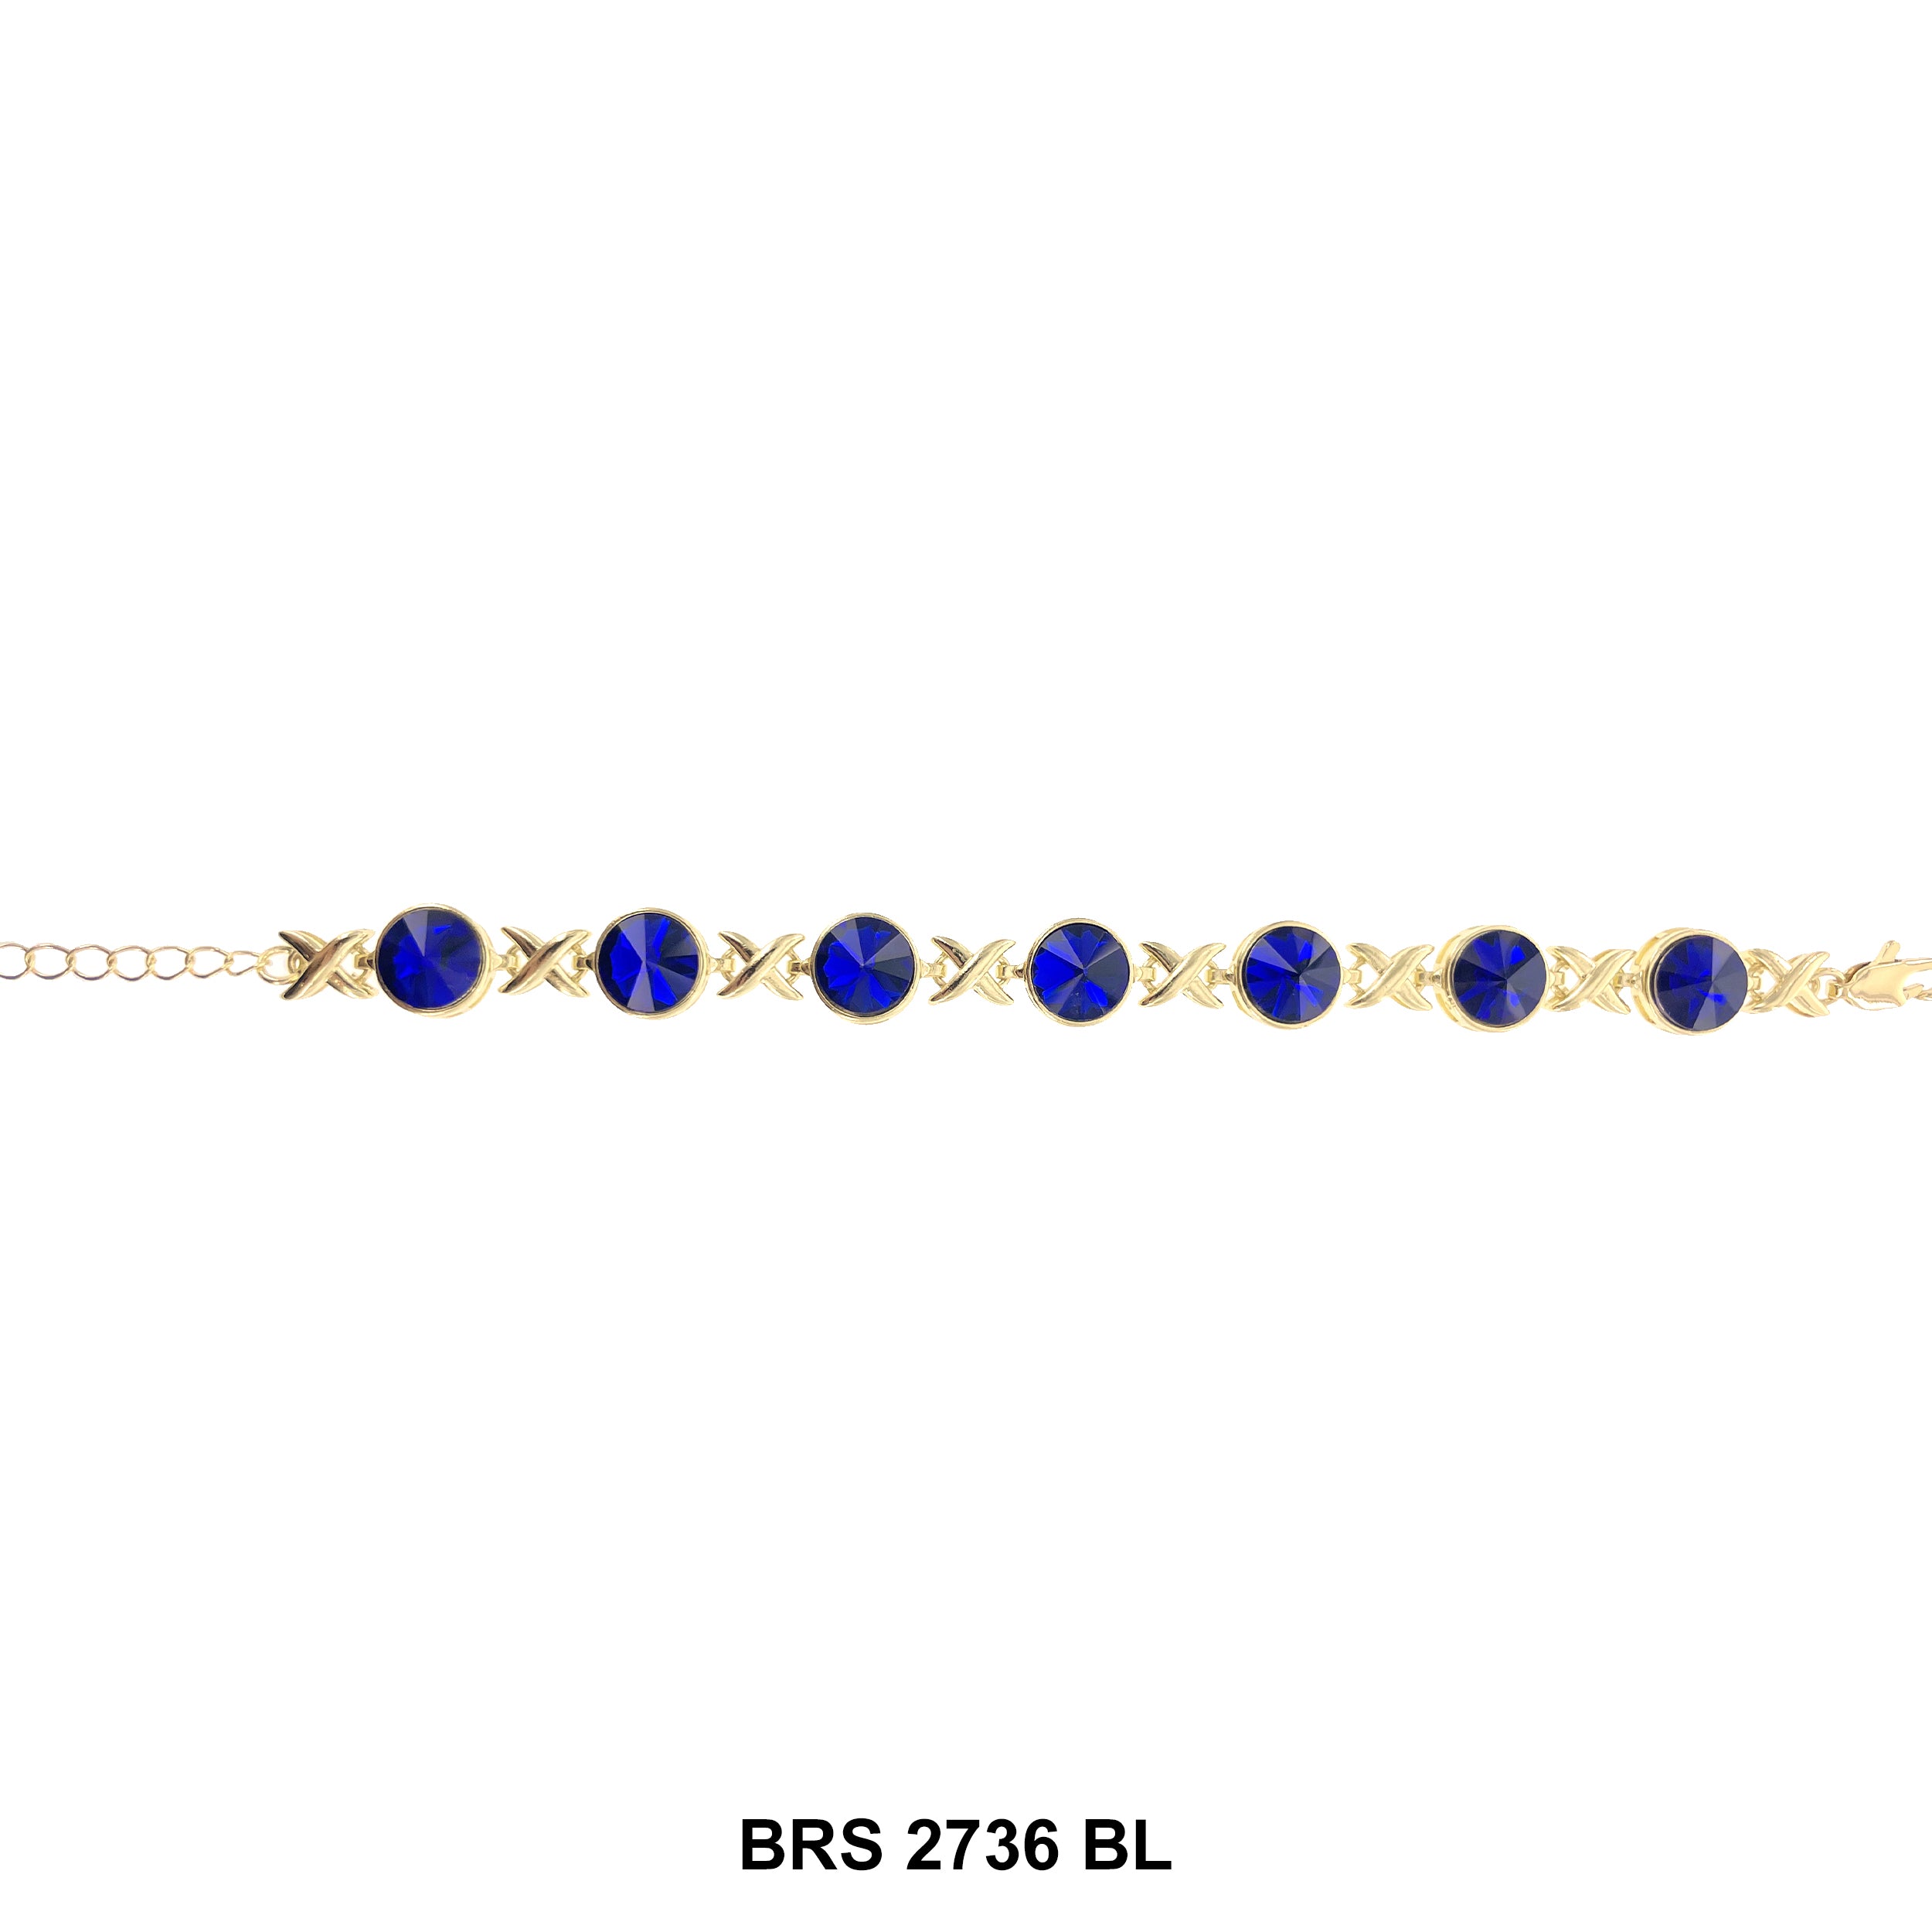 X O Round Stones Bracelet BRS 2736 BL